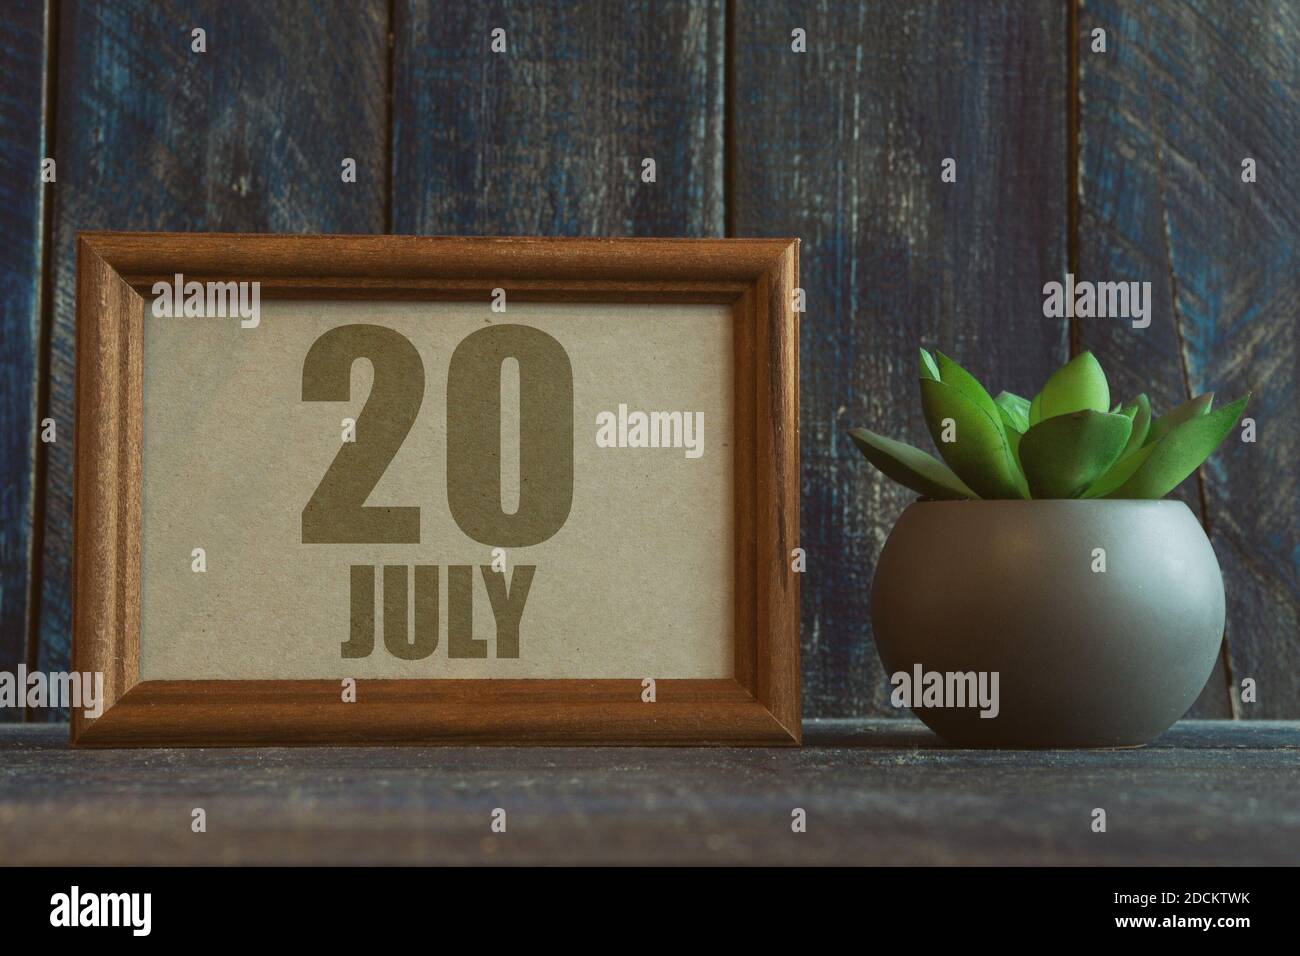 juli. Tag 20 des Monats, Datum im Rahmen neben Sukkulenten auf hölzernen Hintergrund Sommermonat, Tag des Jahres Konzept. Stockfoto